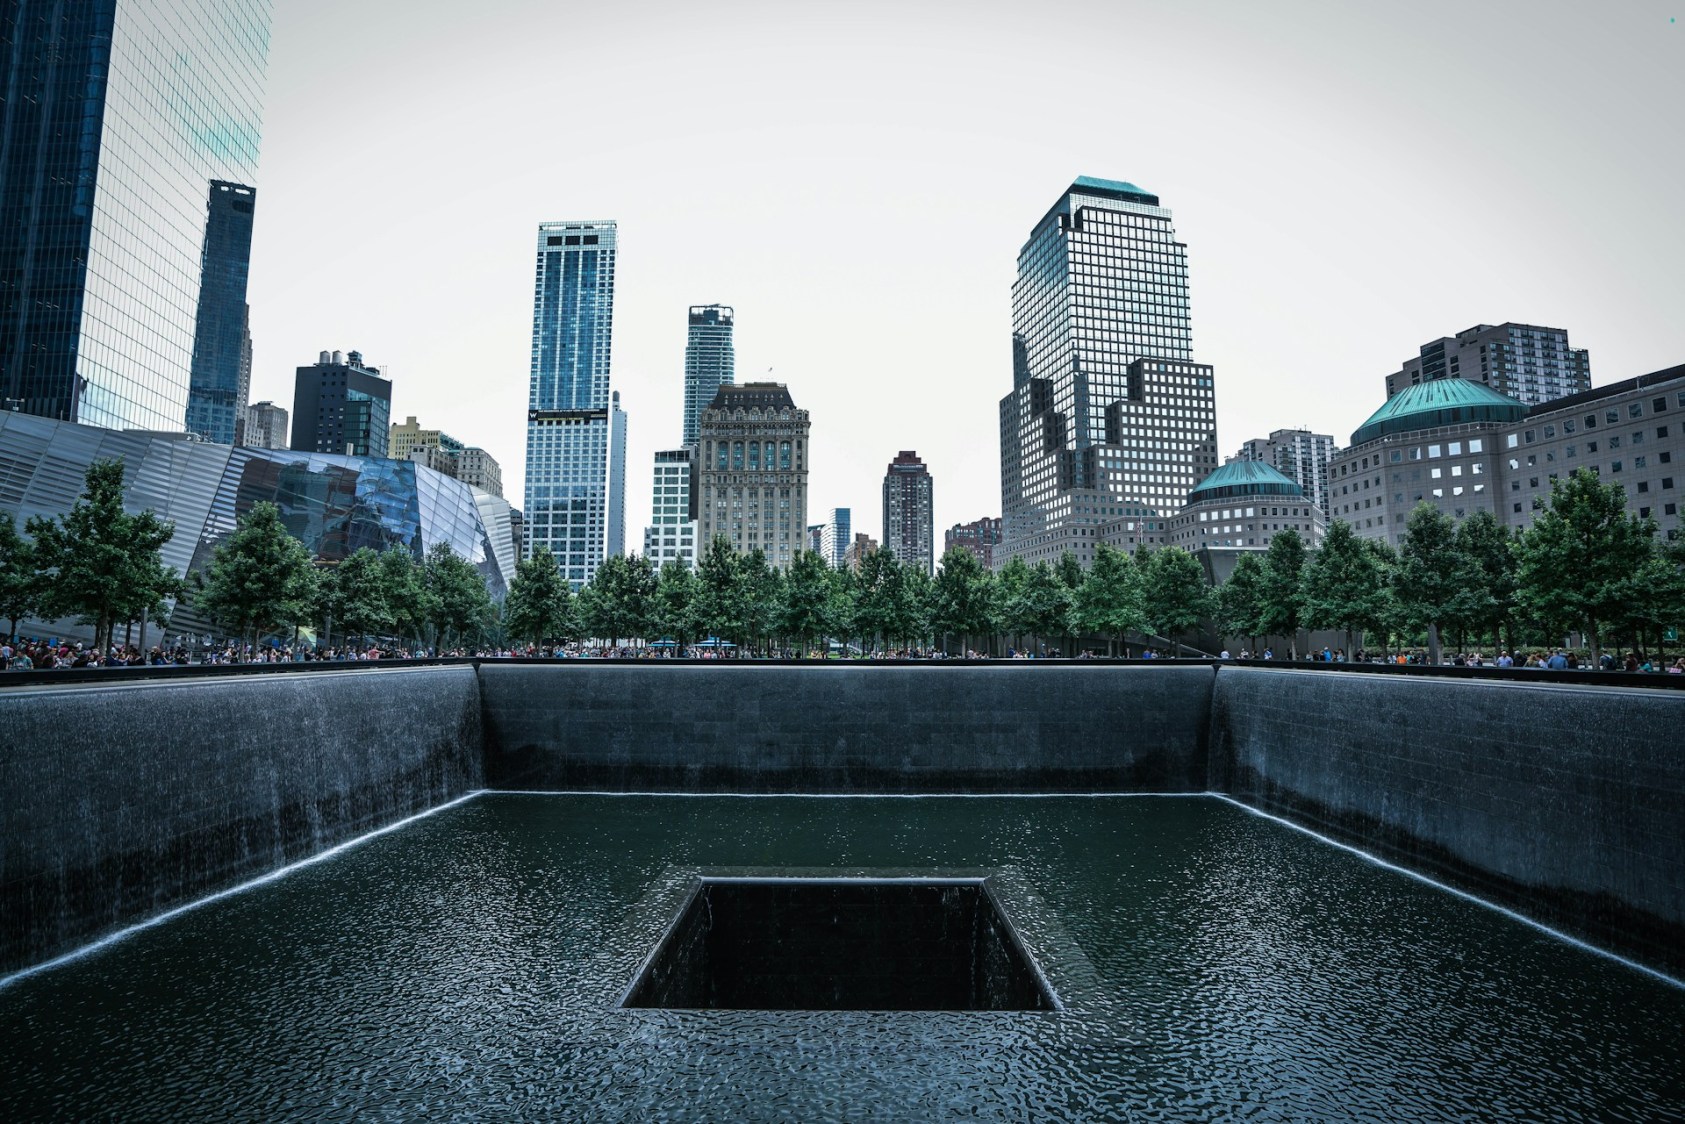 Localizado onde estavam as Torres Gêmeas, o 9/11 Memorial foi construído para homenagear as vítimas tanto do ataque de 11 de setembro de 2001 como as do atentado ao World Trade Center de 1993, que deixou seis mortos.